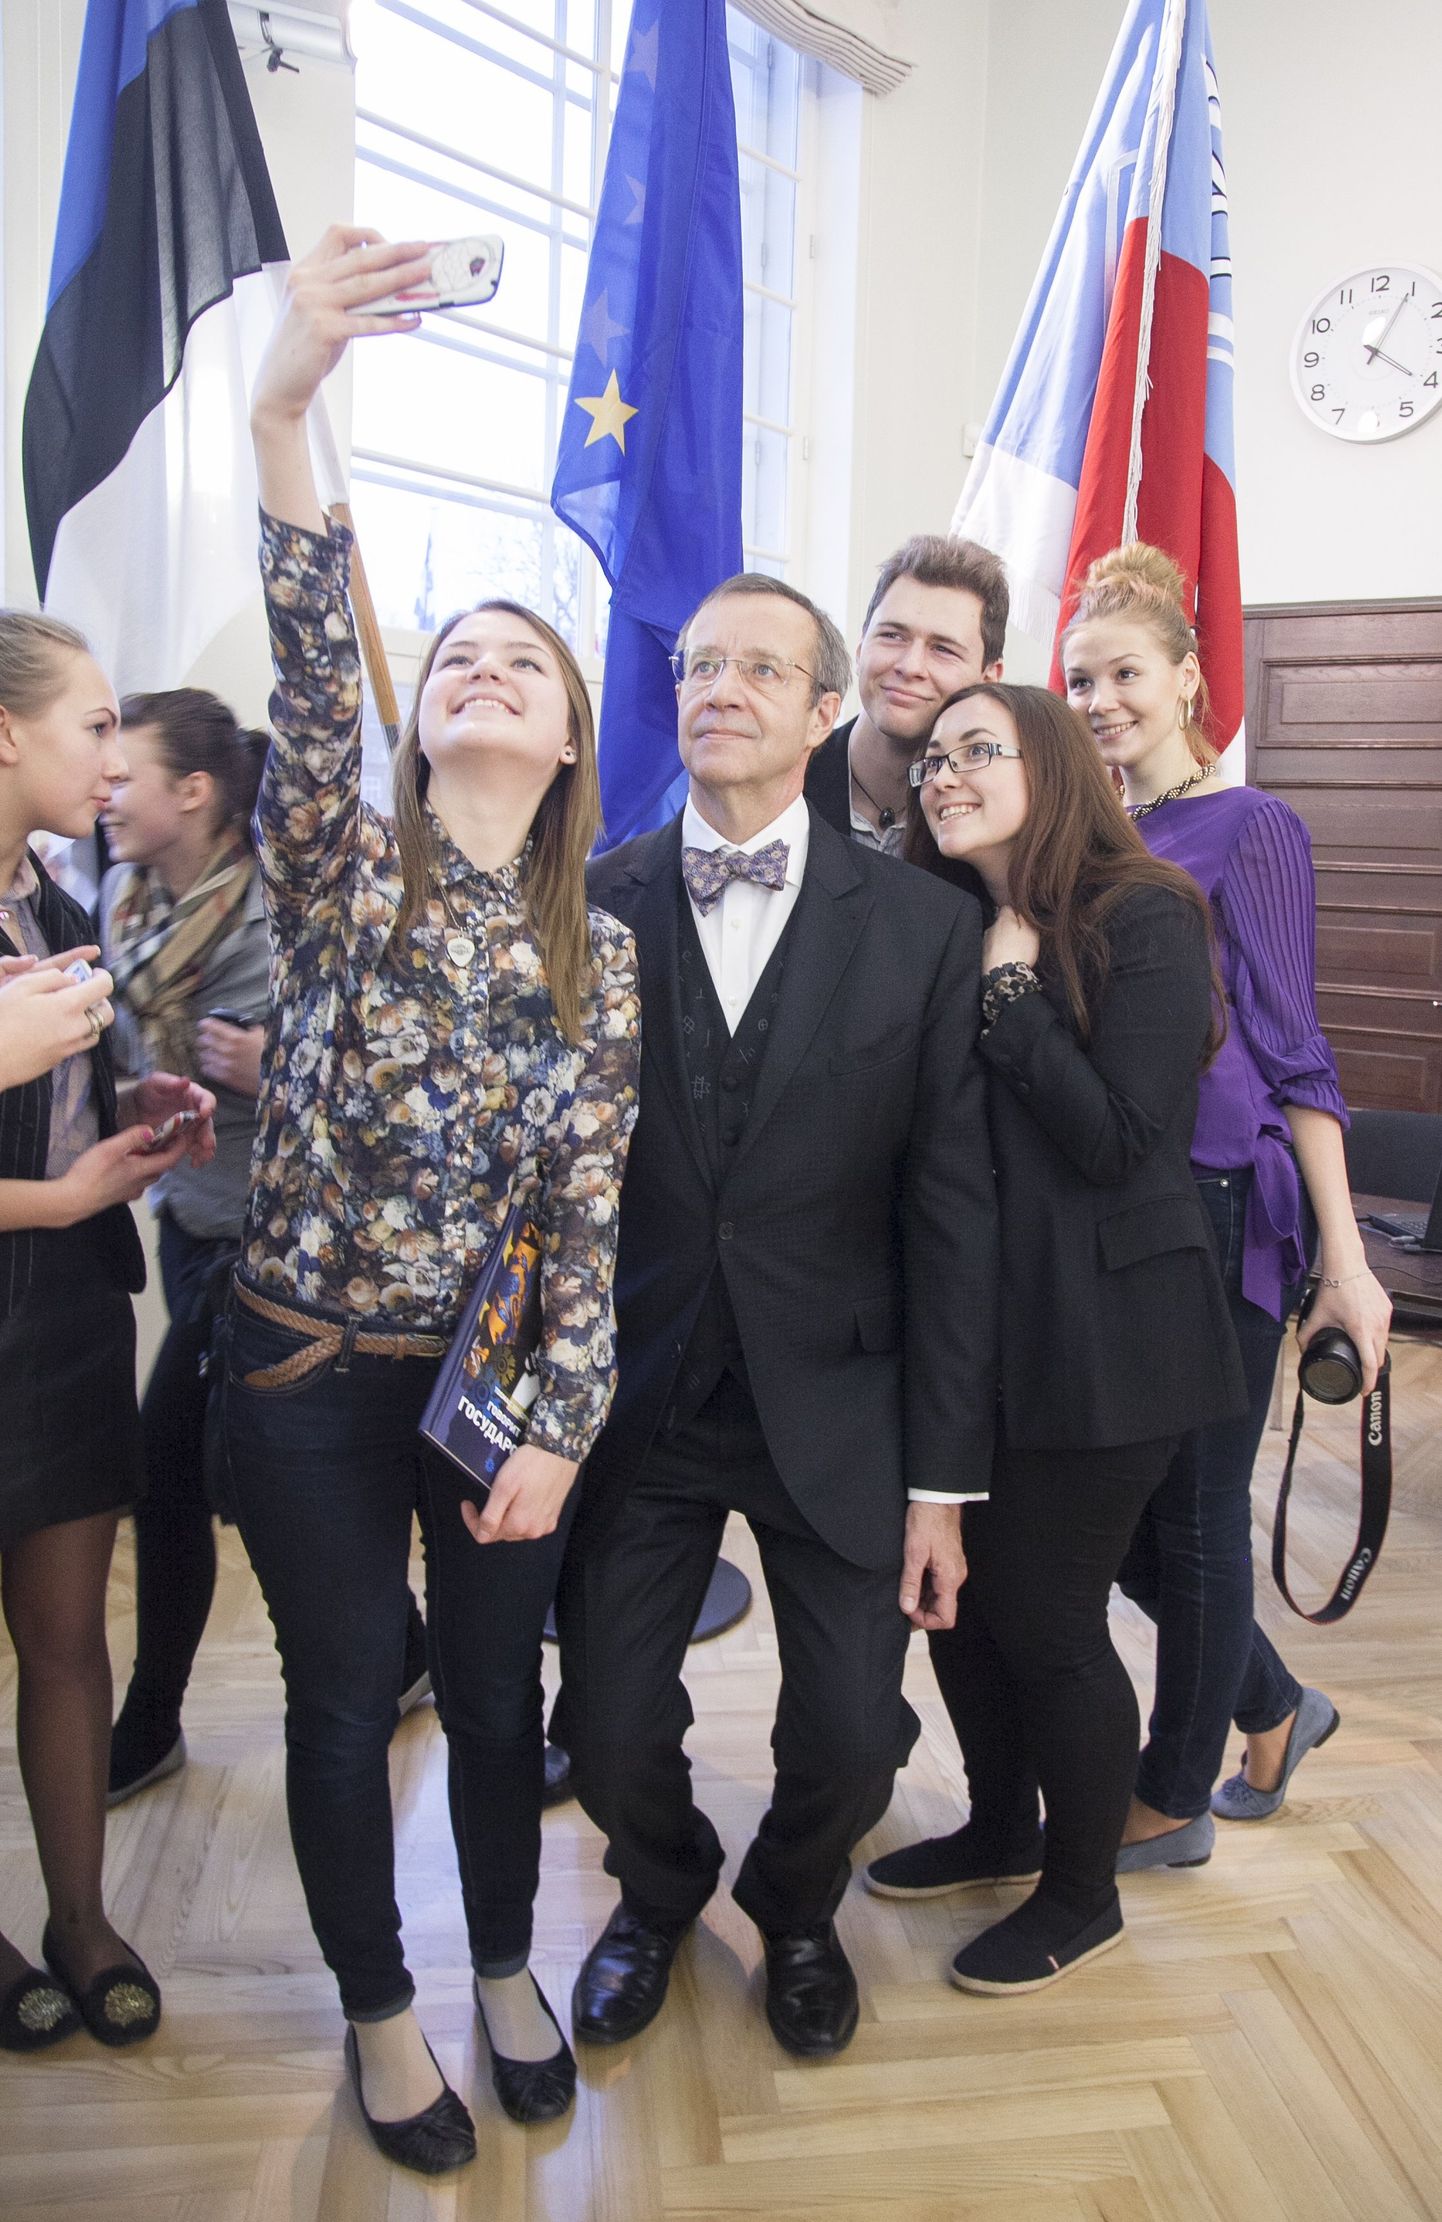 Vene kooliõpilased tegid koos presidendiga selfie't.